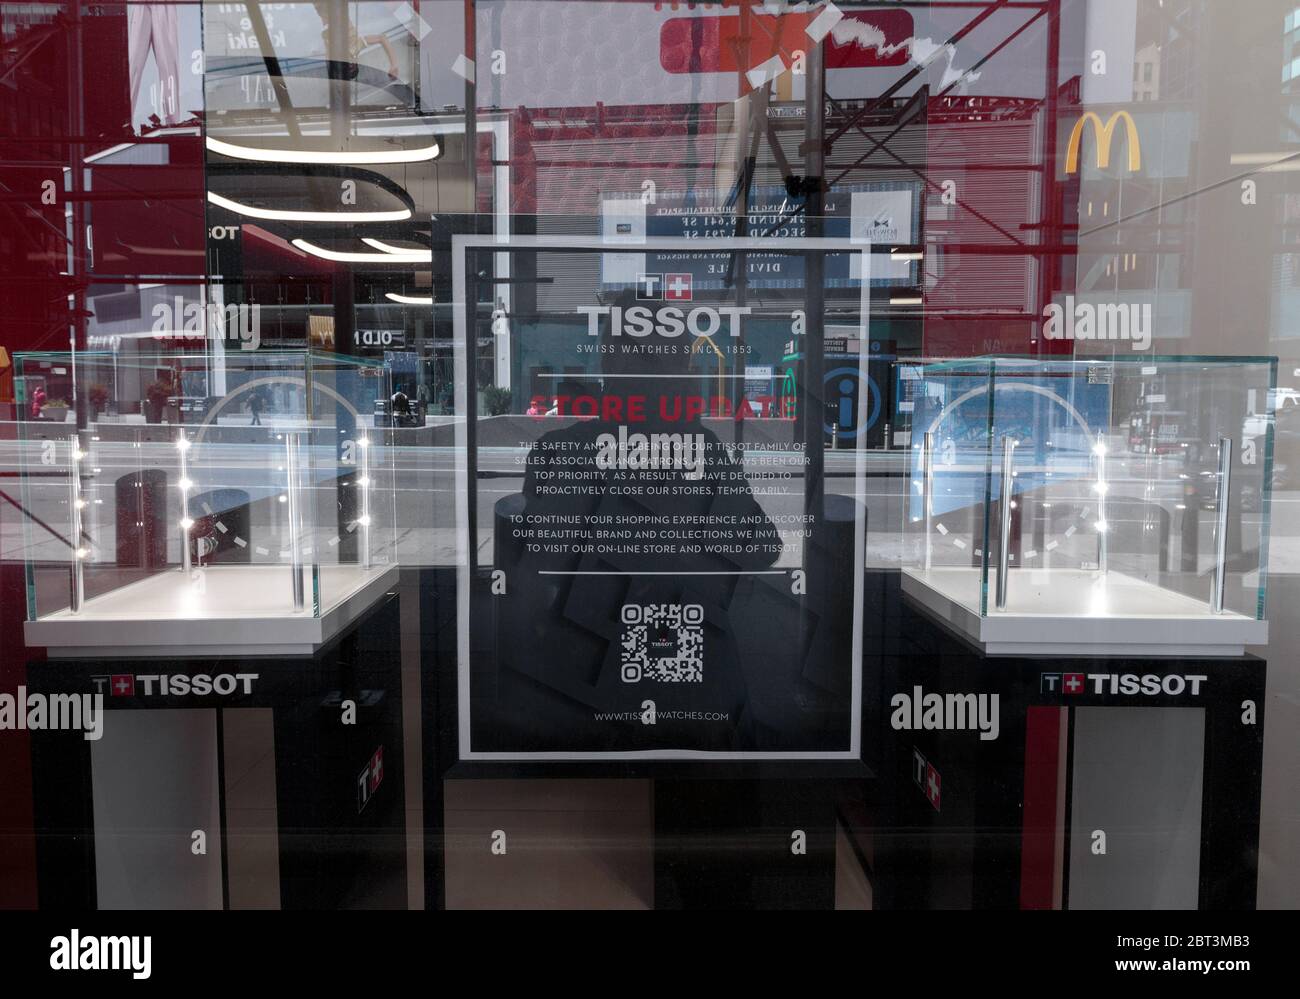 Signez au magasin Tissot de Times Square, une société de luxe suisse de montres, en indiquant qu'elle est temporairement fermée en raison de la pandémie du coronavirus ou du covid-19 Banque D'Images